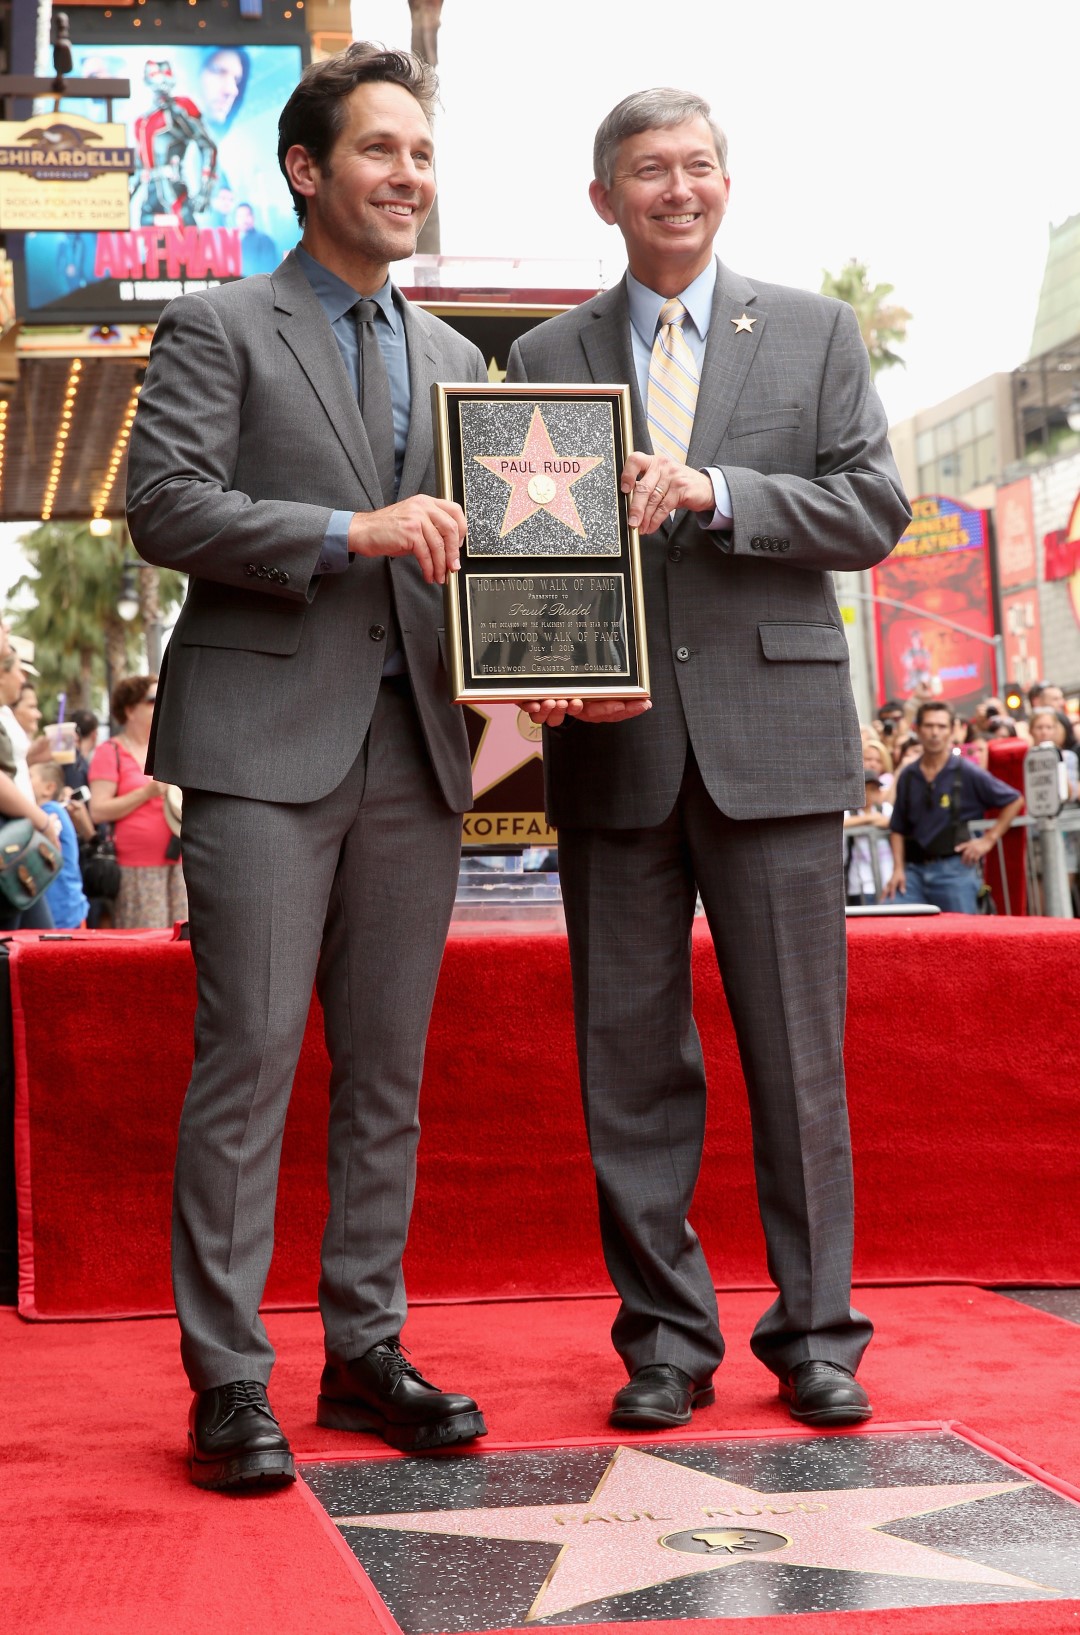 “Người Kiến” Paul Rudd vinh dự nhận ngôi sao trên Đại lộ danh vọng Hollywood - Ảnh 8